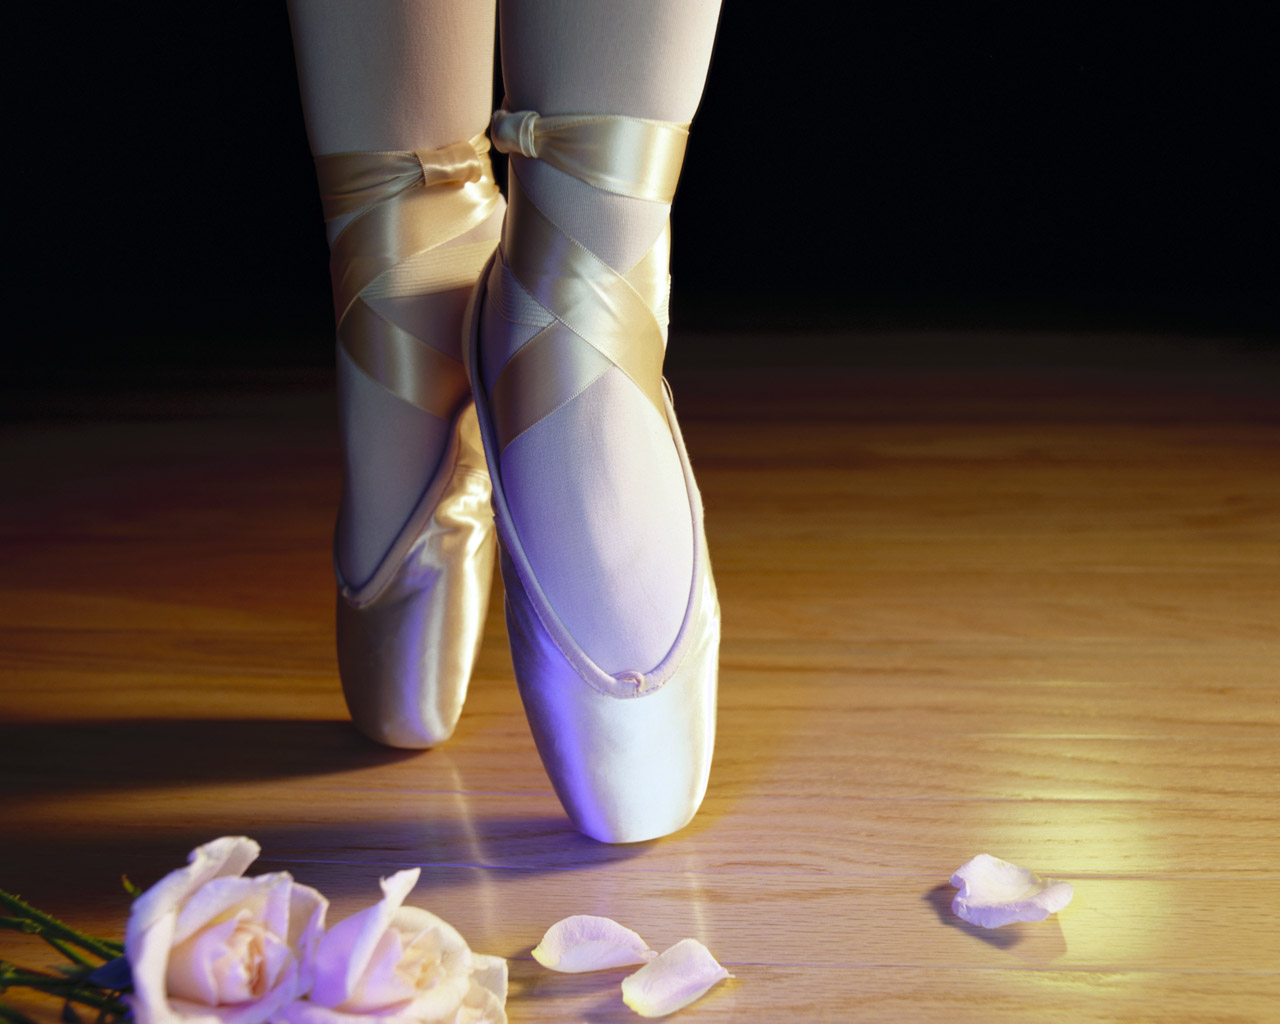 https://blogger.googleusercontent.com/img/b/R29vZ2xl/AVvXsEjJ2h7ArRRRlwTTTWQyyEkBEqZSeqRGZyvl1_oGwzIq9Km3h5LlybXyimMp1MCCSXHGsgBLAWtPNjHGCsgKIiHdVzJdCoBTNs00HIhJoPbtzcOHpyTCZDw6oyrEJL8CfeghFgwqvfSFOc0x/s1600/dancer_ballet_shoes-161.jpg